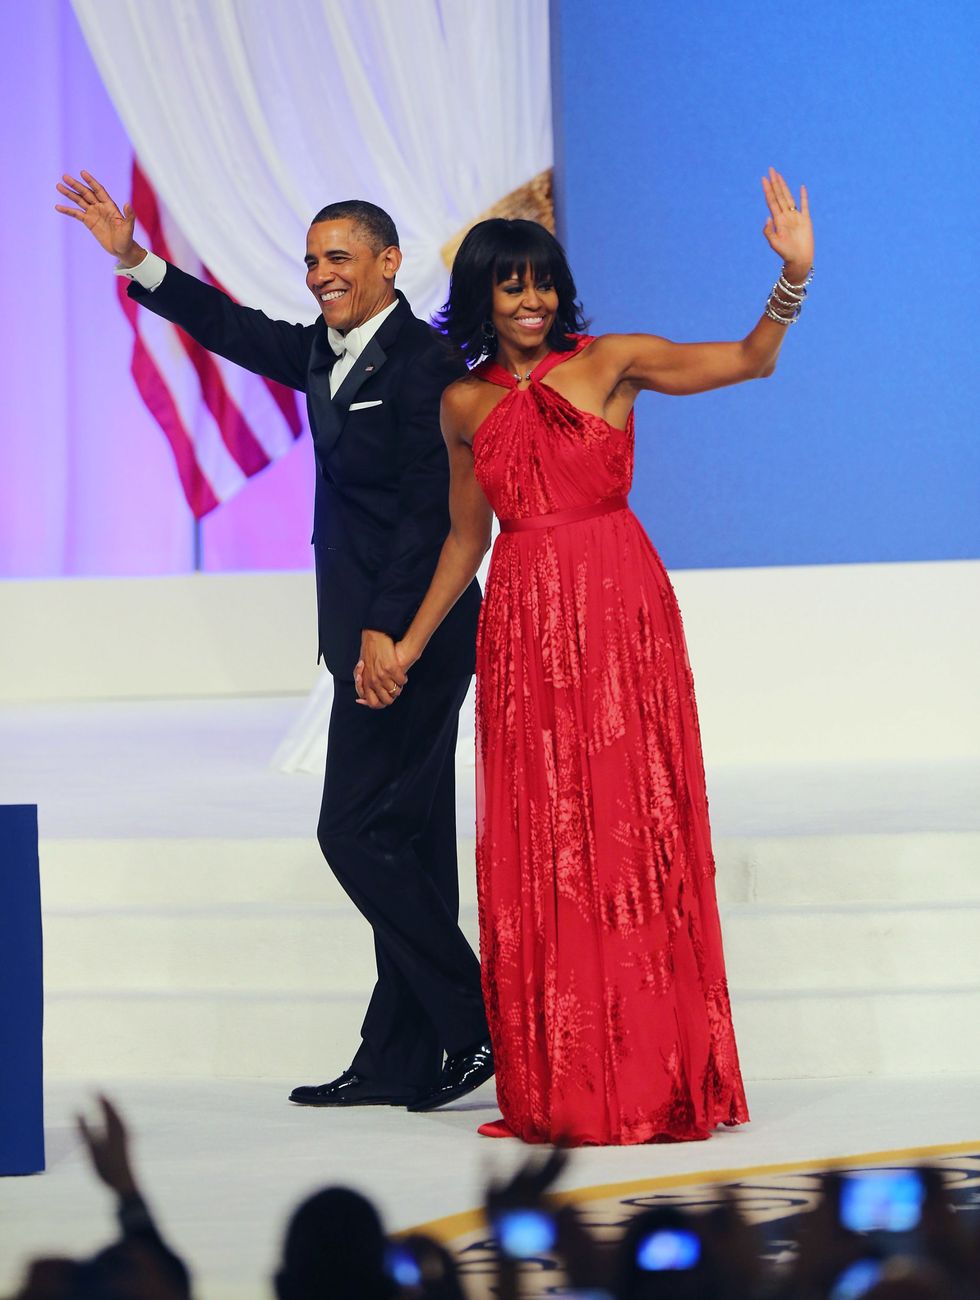 <p>第二期大統領就任式後の舞踏会では、またも「ジェイソン ウー」のドレスを着用。一期のホワイトドレスに続いて今回はレッド！　彼女の鍛え上げられた腕を鮮やかに魅せるシフォンロングドレス。4年間、大統領である夫の隣で、堂々と振る舞ってきた彼女を、赤いスパンコールが表現しているよう。</p>